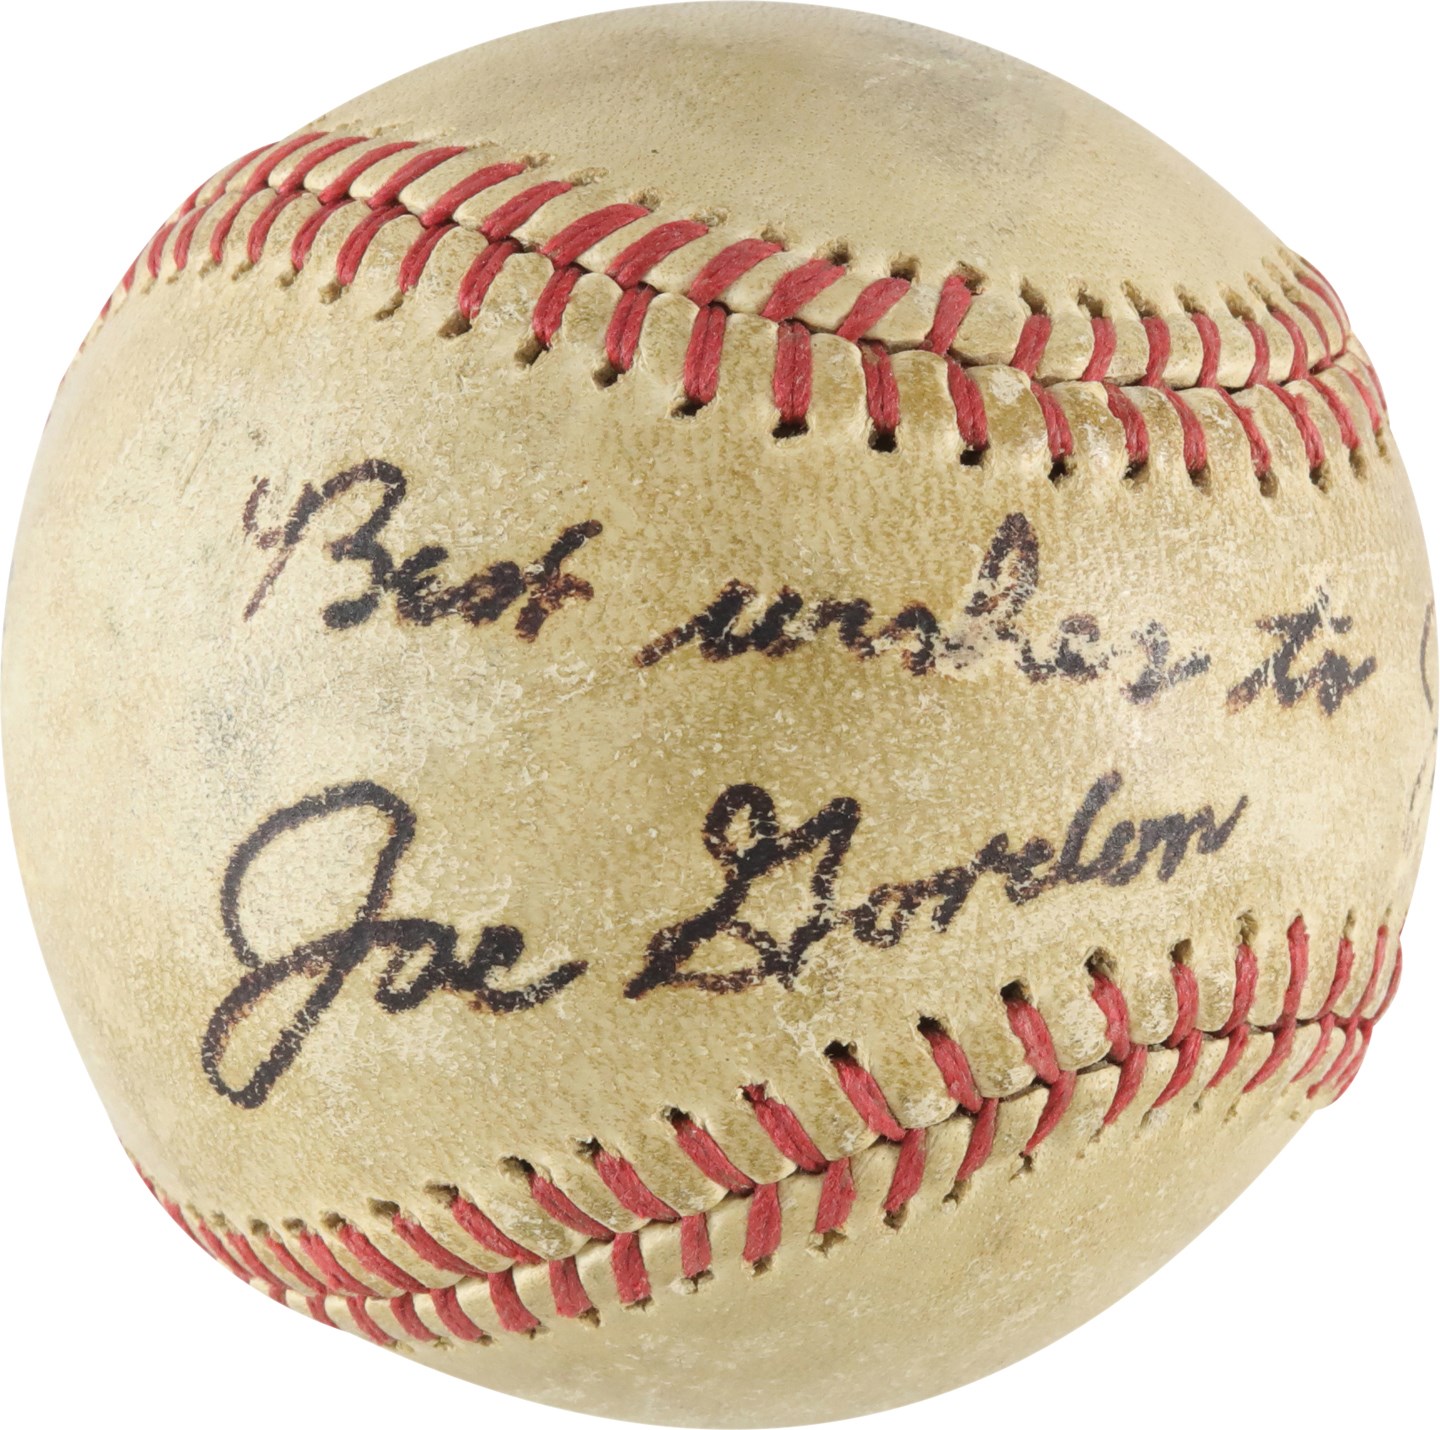 - Rare Joe Gordon Single-Signed Baseball (JSA)